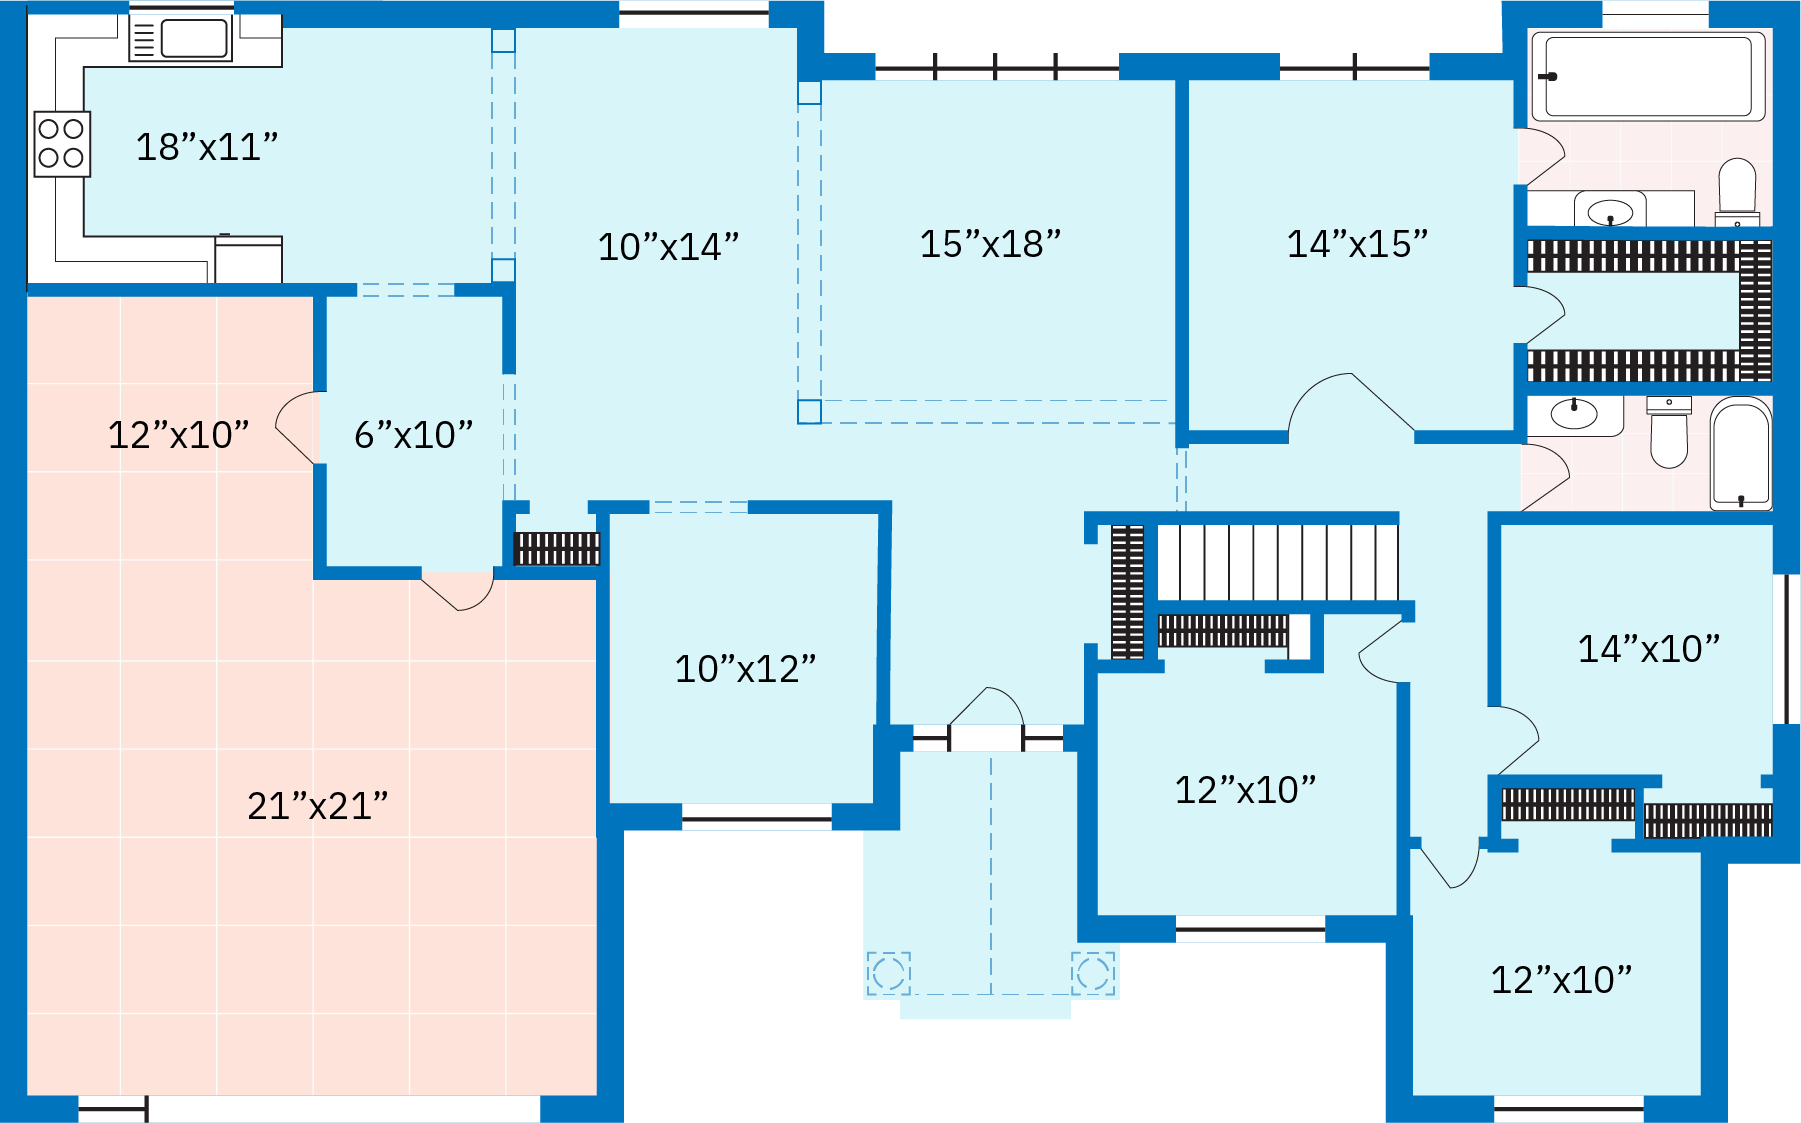 21世纪美国中产阶级住宅的平面图。 平面图描绘了一栋带厨房、四间卧室、两间浴室、一间家庭房、书房、向下通往地下室的台阶和一个附属的两车位车库的单层房屋。